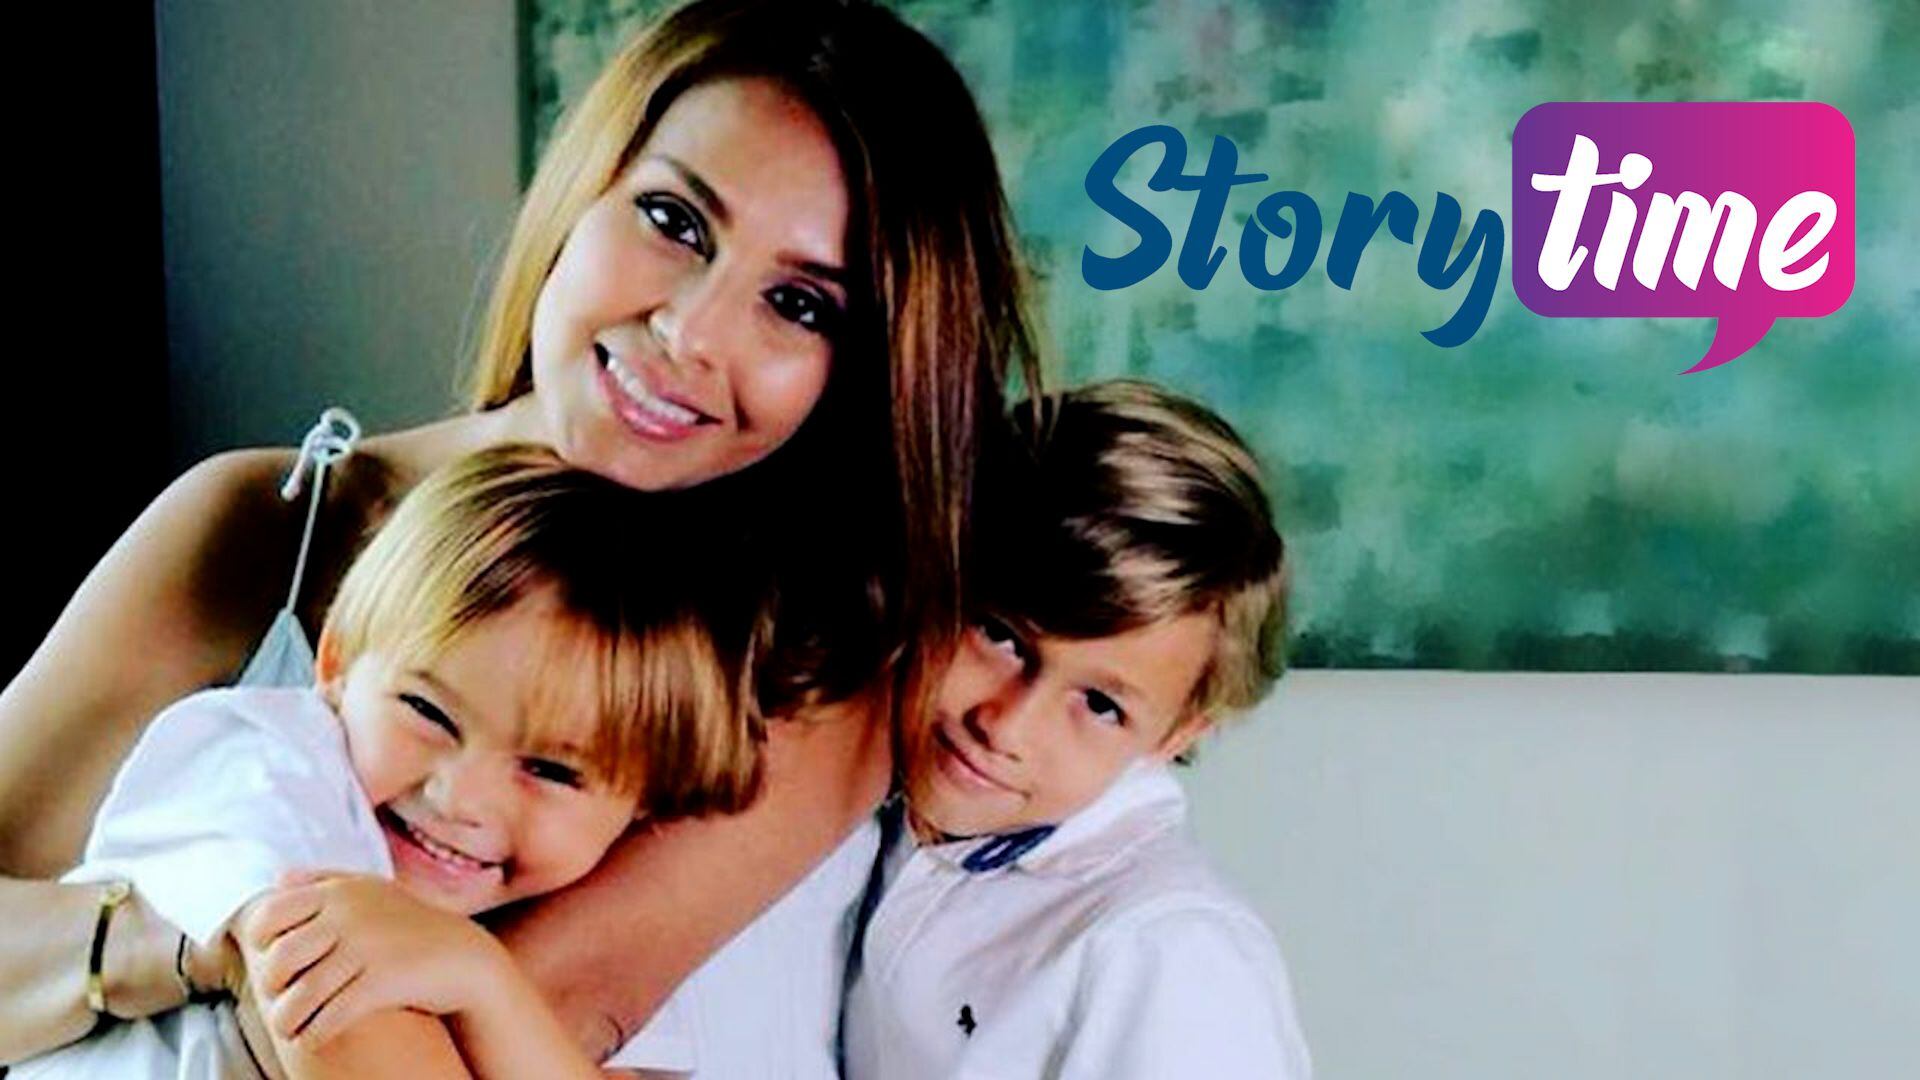 Wendy Cruz habló de su historia poco conocida en el capítulo reciente de 'Storytime'.